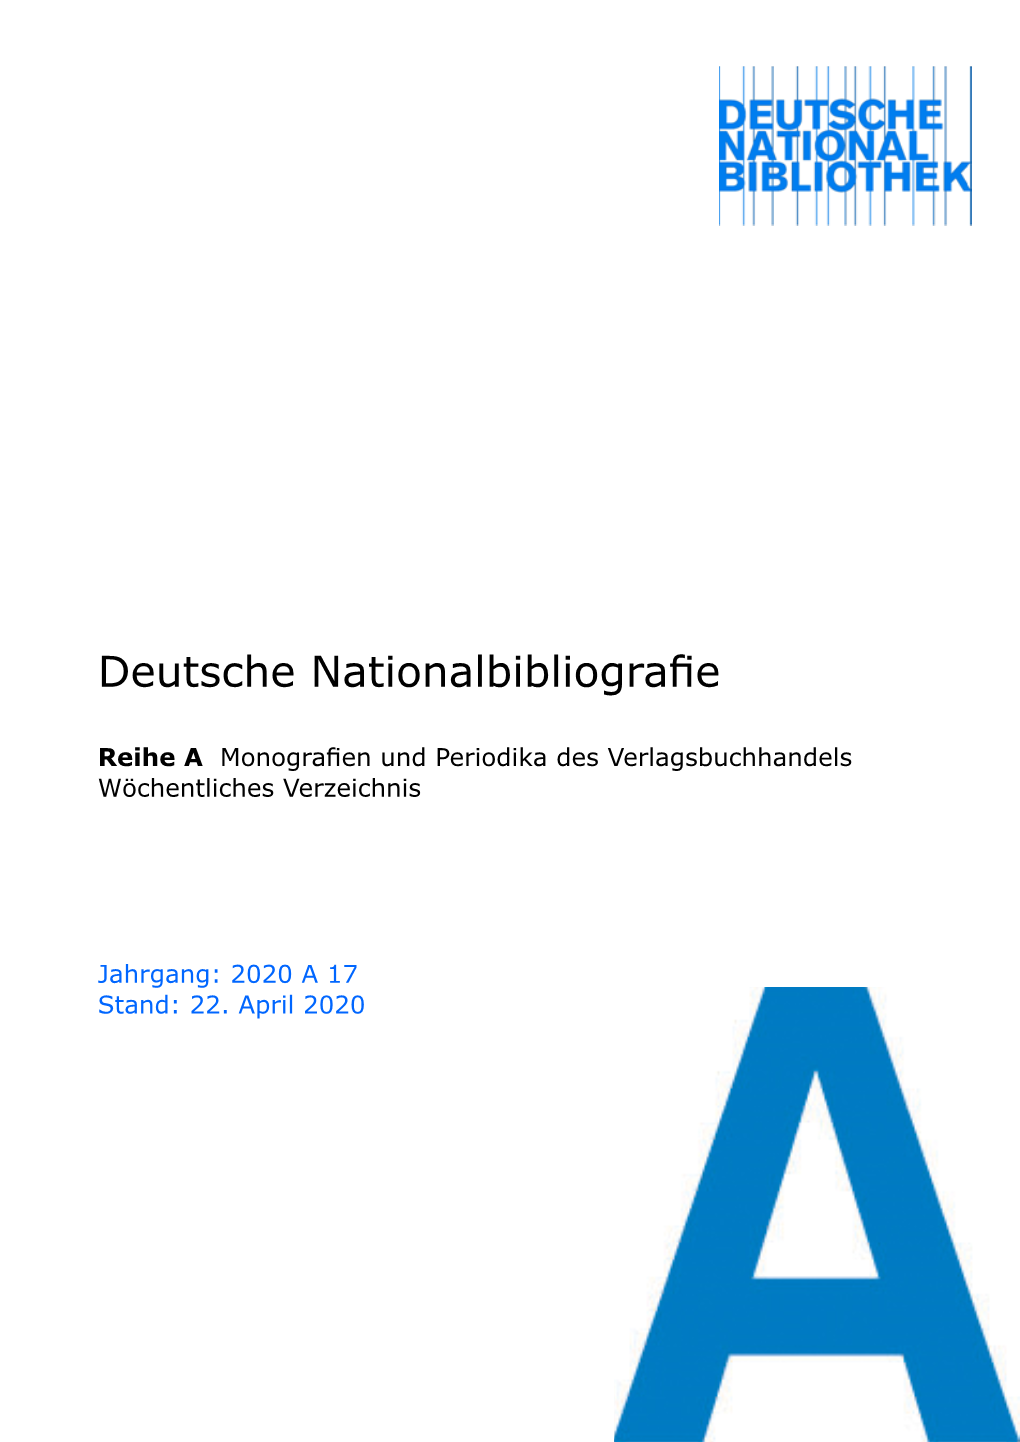 Deutsche Nationalbibliografie 2020 a 17